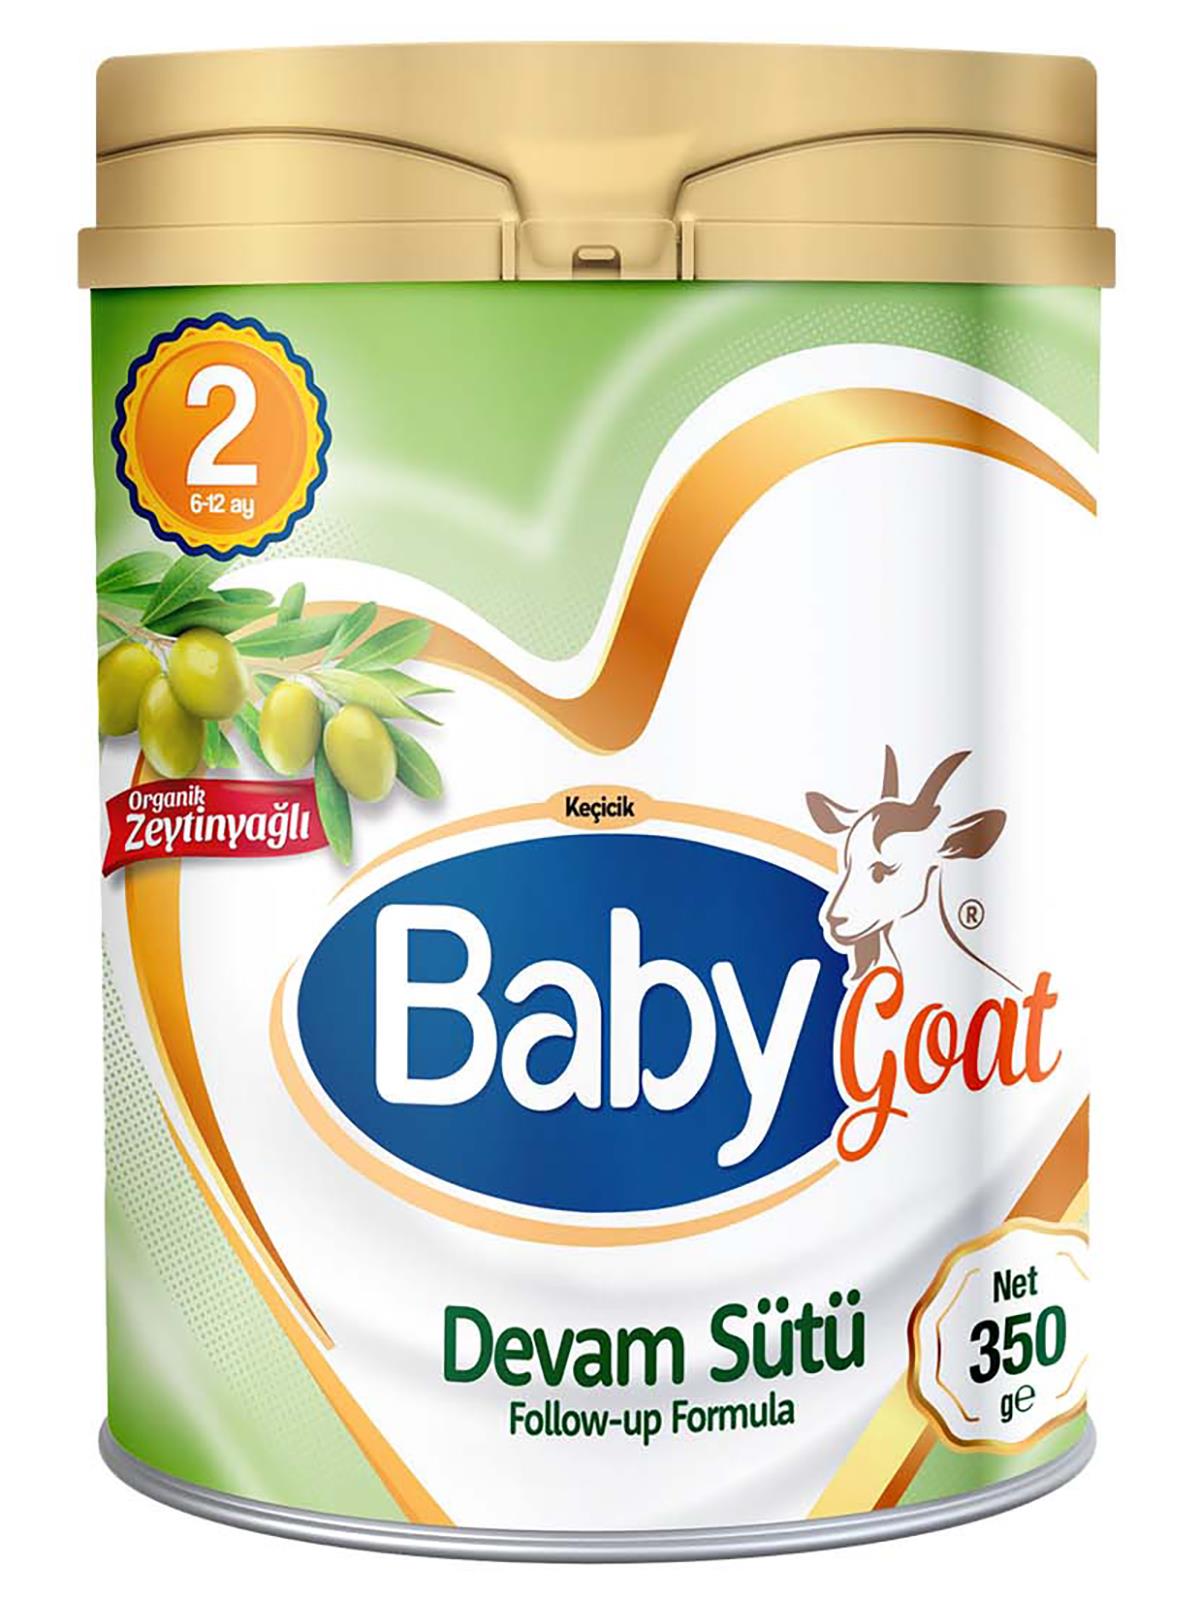 Baby Goat 2 Keçi Sütü Bazlı Organik Zeytinyağlı Bebek Sütü 350 gr